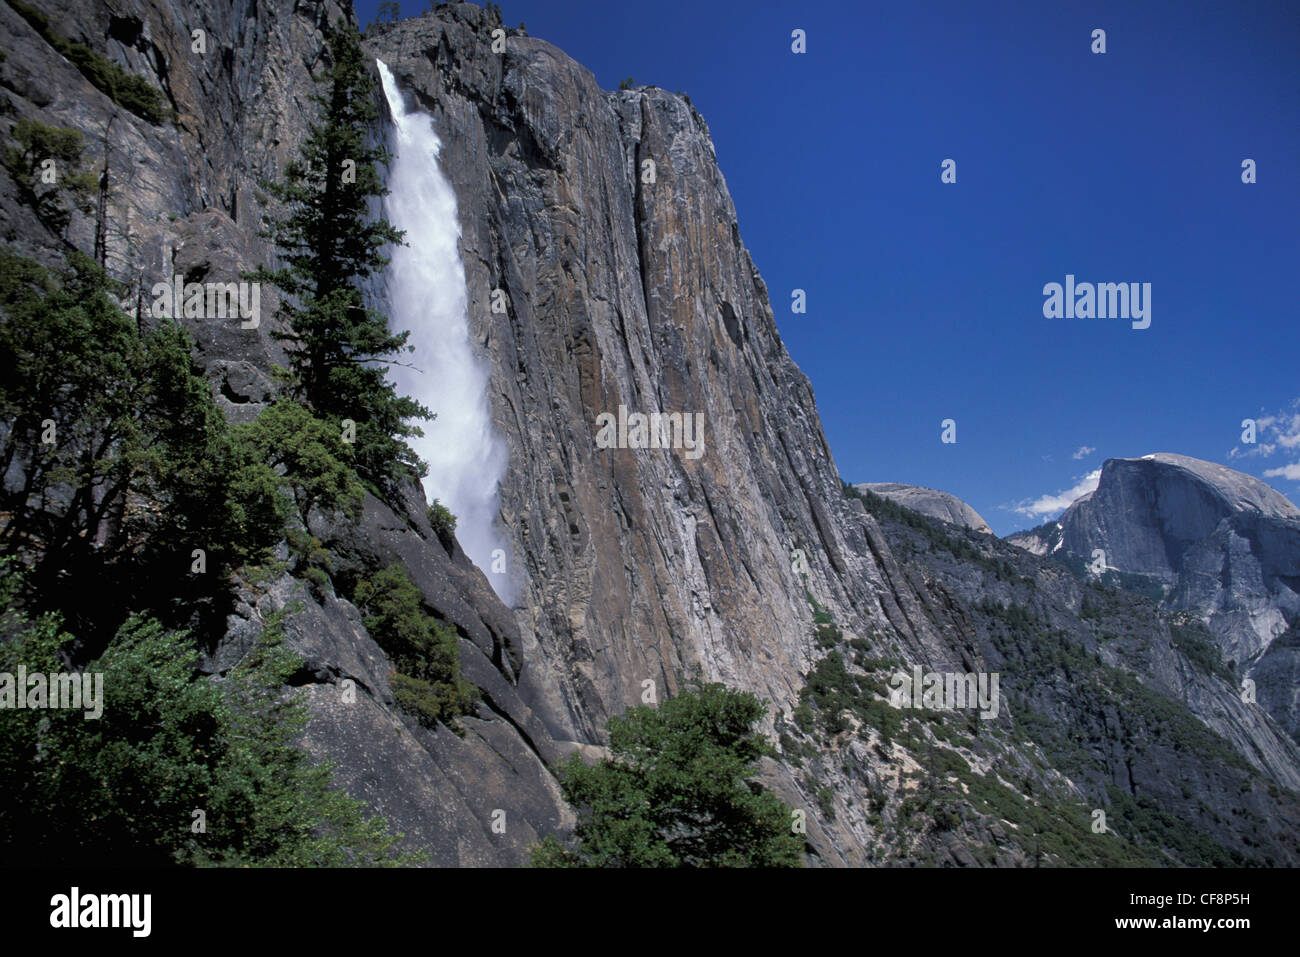 Il parco nazionale di Yosemite Falls, Half Dome, Yosemite, N.P., California, Stati Uniti d'America, Stati Uniti, America, Cascata, Cliff, Half Dome, Sierra Nevada, Foto Stock